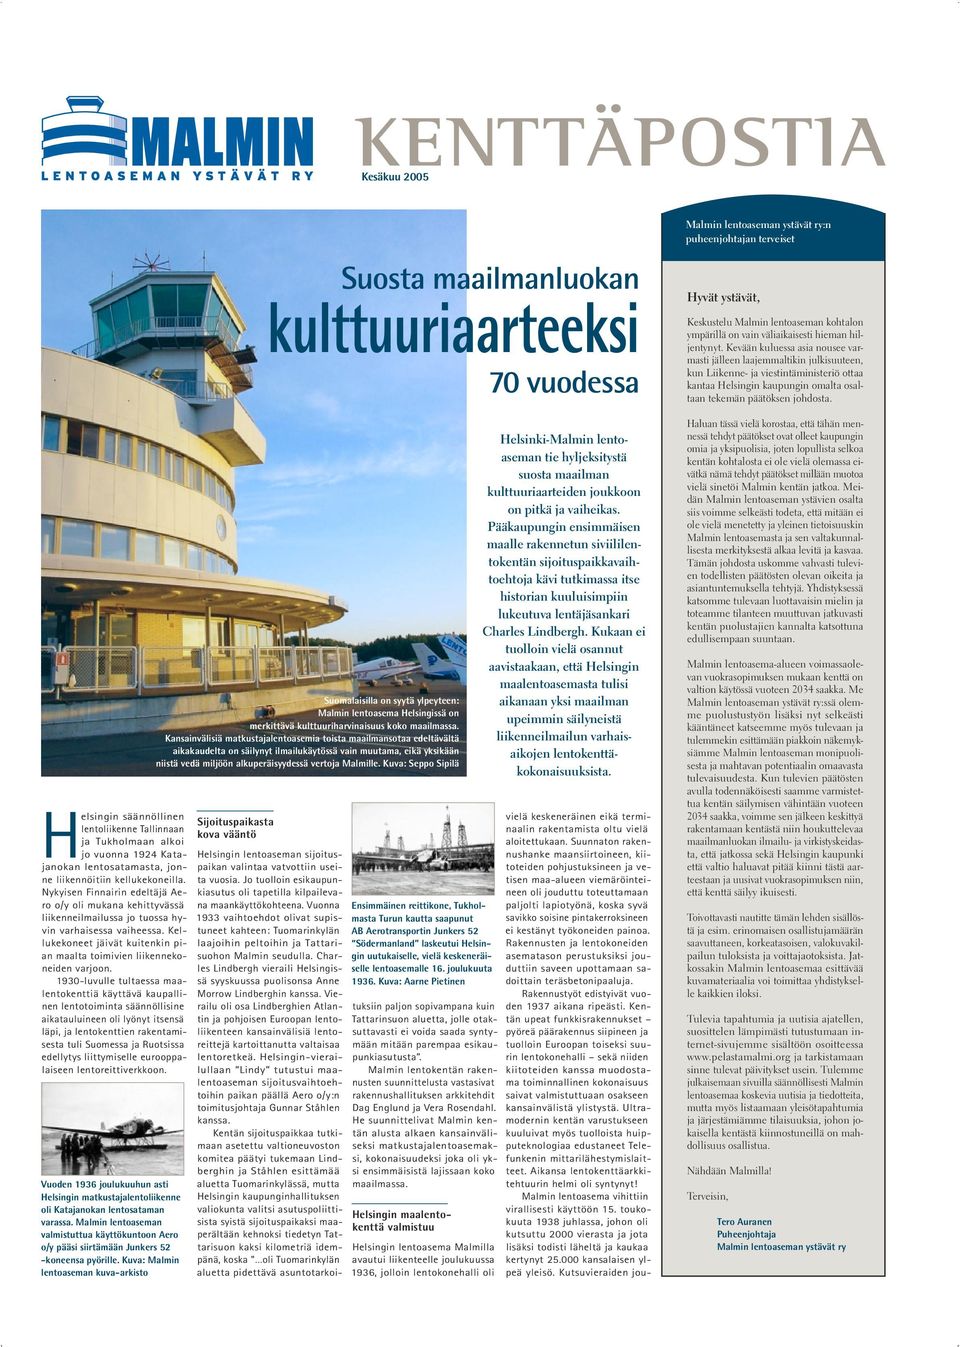 Helsingin säännöllinen lentoliikenne Tallinnaan ja Tukholmaan alkoi jo vuonna 1924 Katajanokan lentosatamasta, jonne liikennöitiin kellukekoneilla.